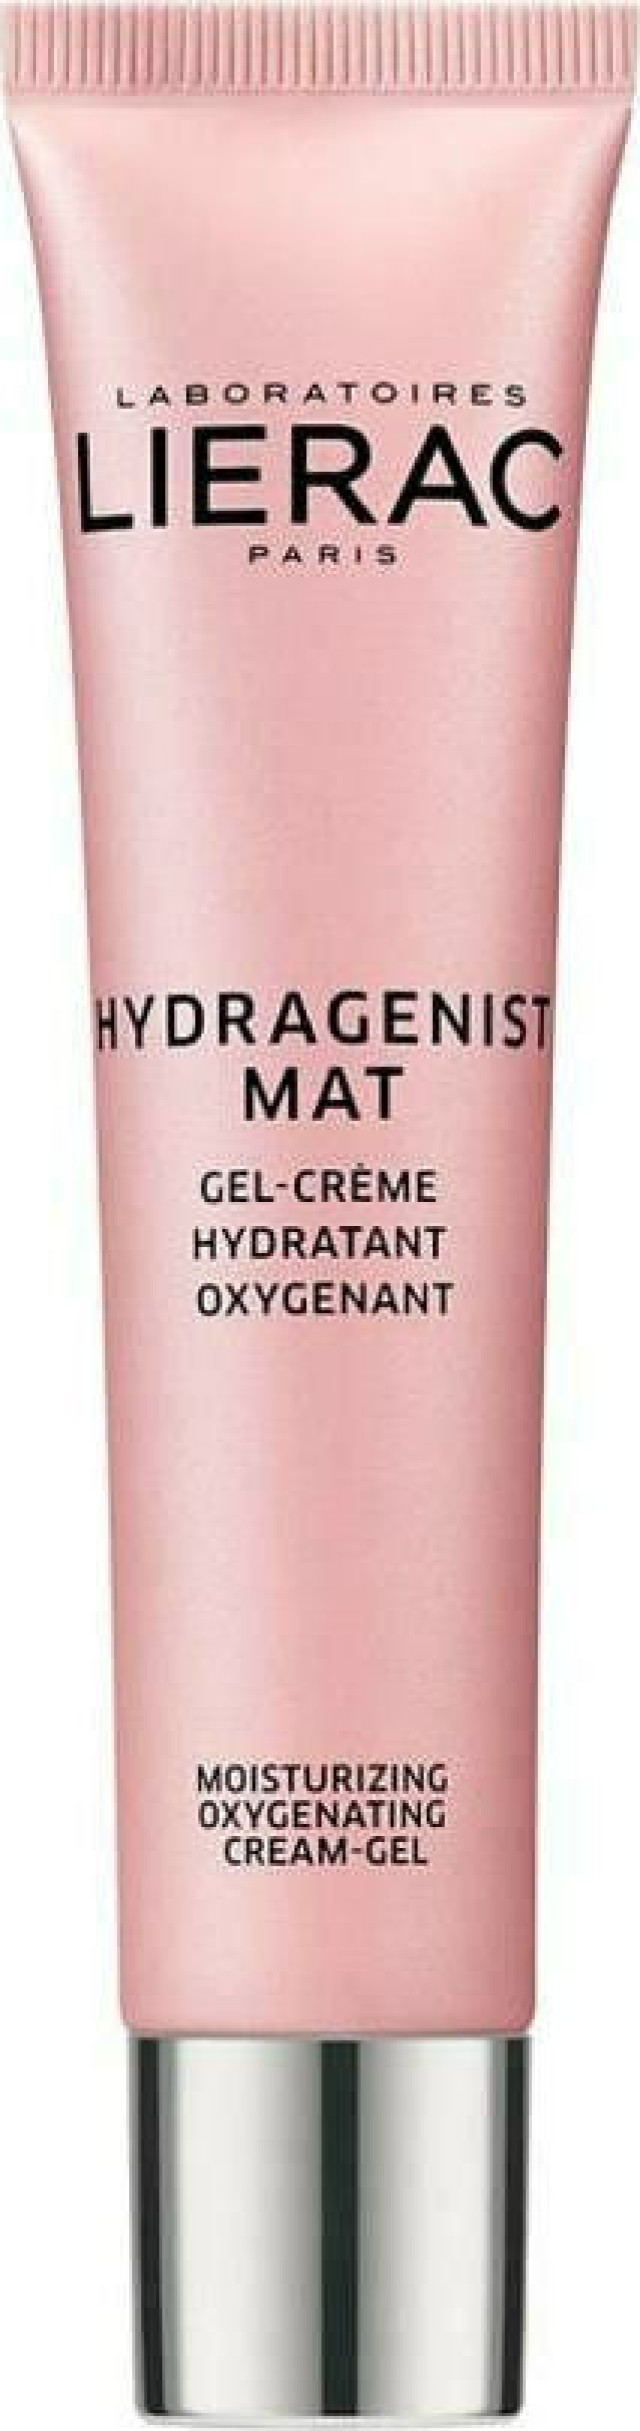 Lierac Hydragenist Mat Cream-Gel 30ml